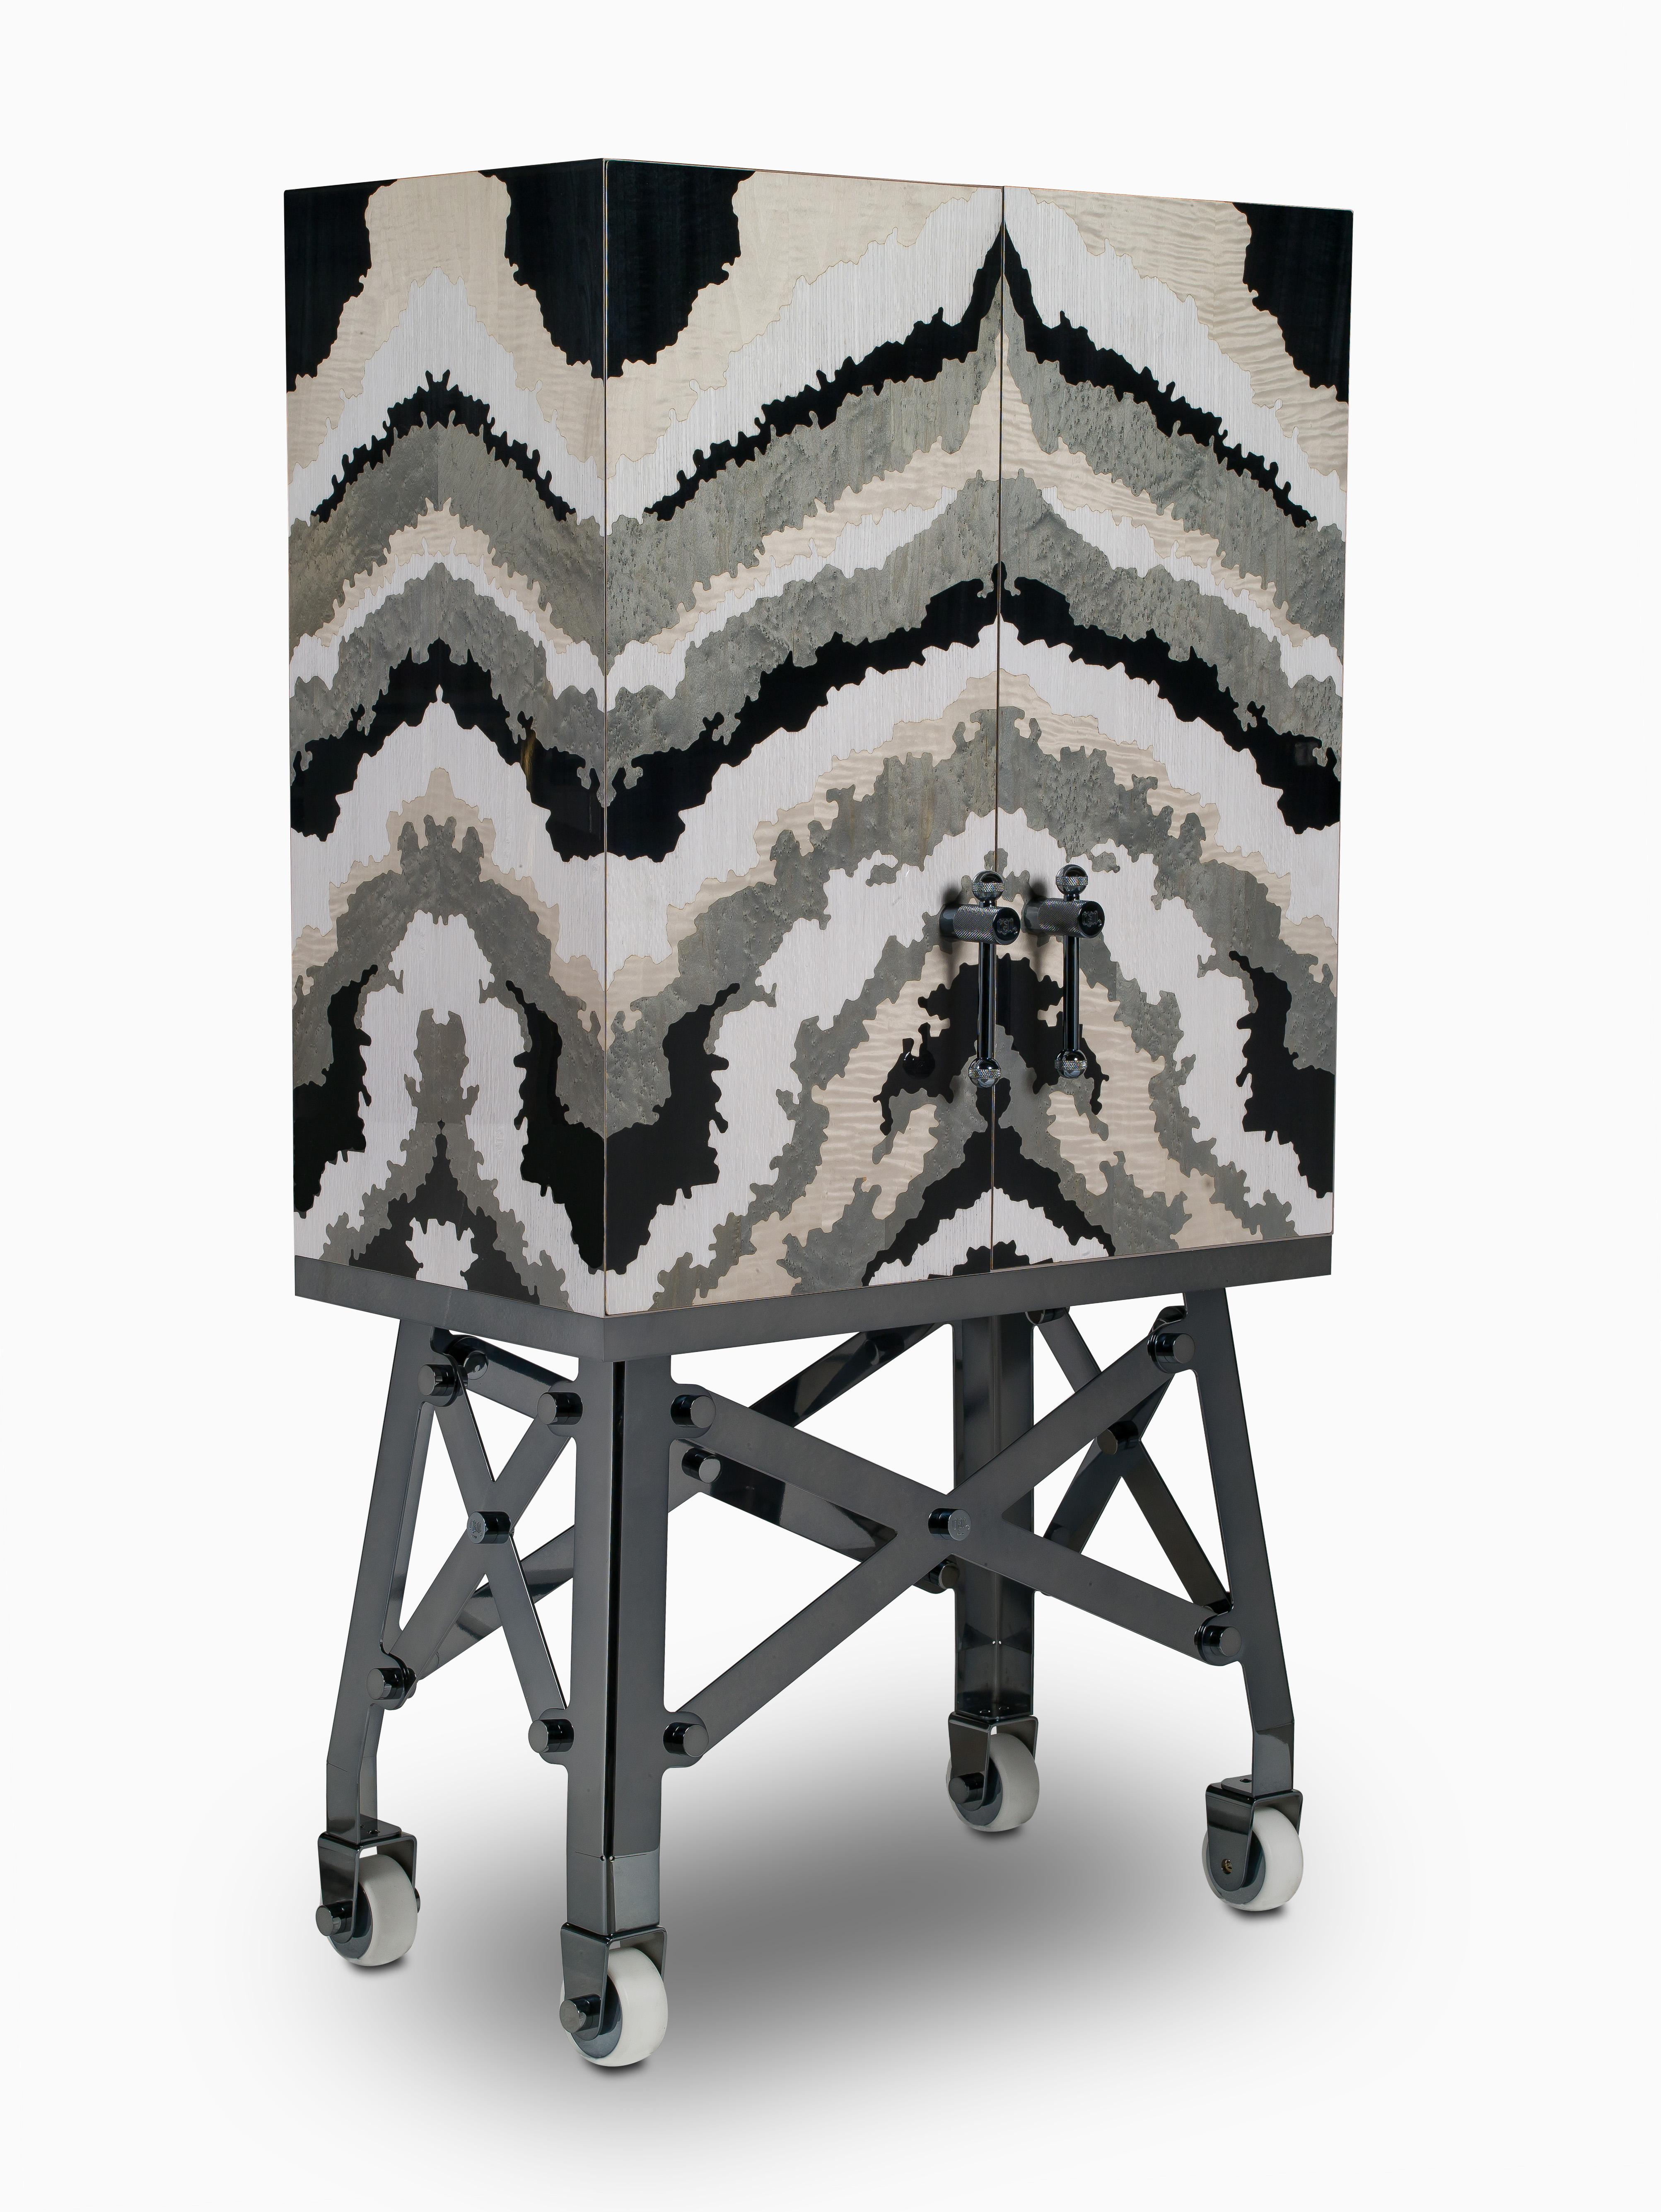 Dans les meubles de rangement Officina, la finition Mimetica - avec sa texture graphique particulière qui rappelle le marbre - est réinterprétée par des contrastes chromatiques audacieux. L'effet camouflage (obtenu à partir d'une technique de